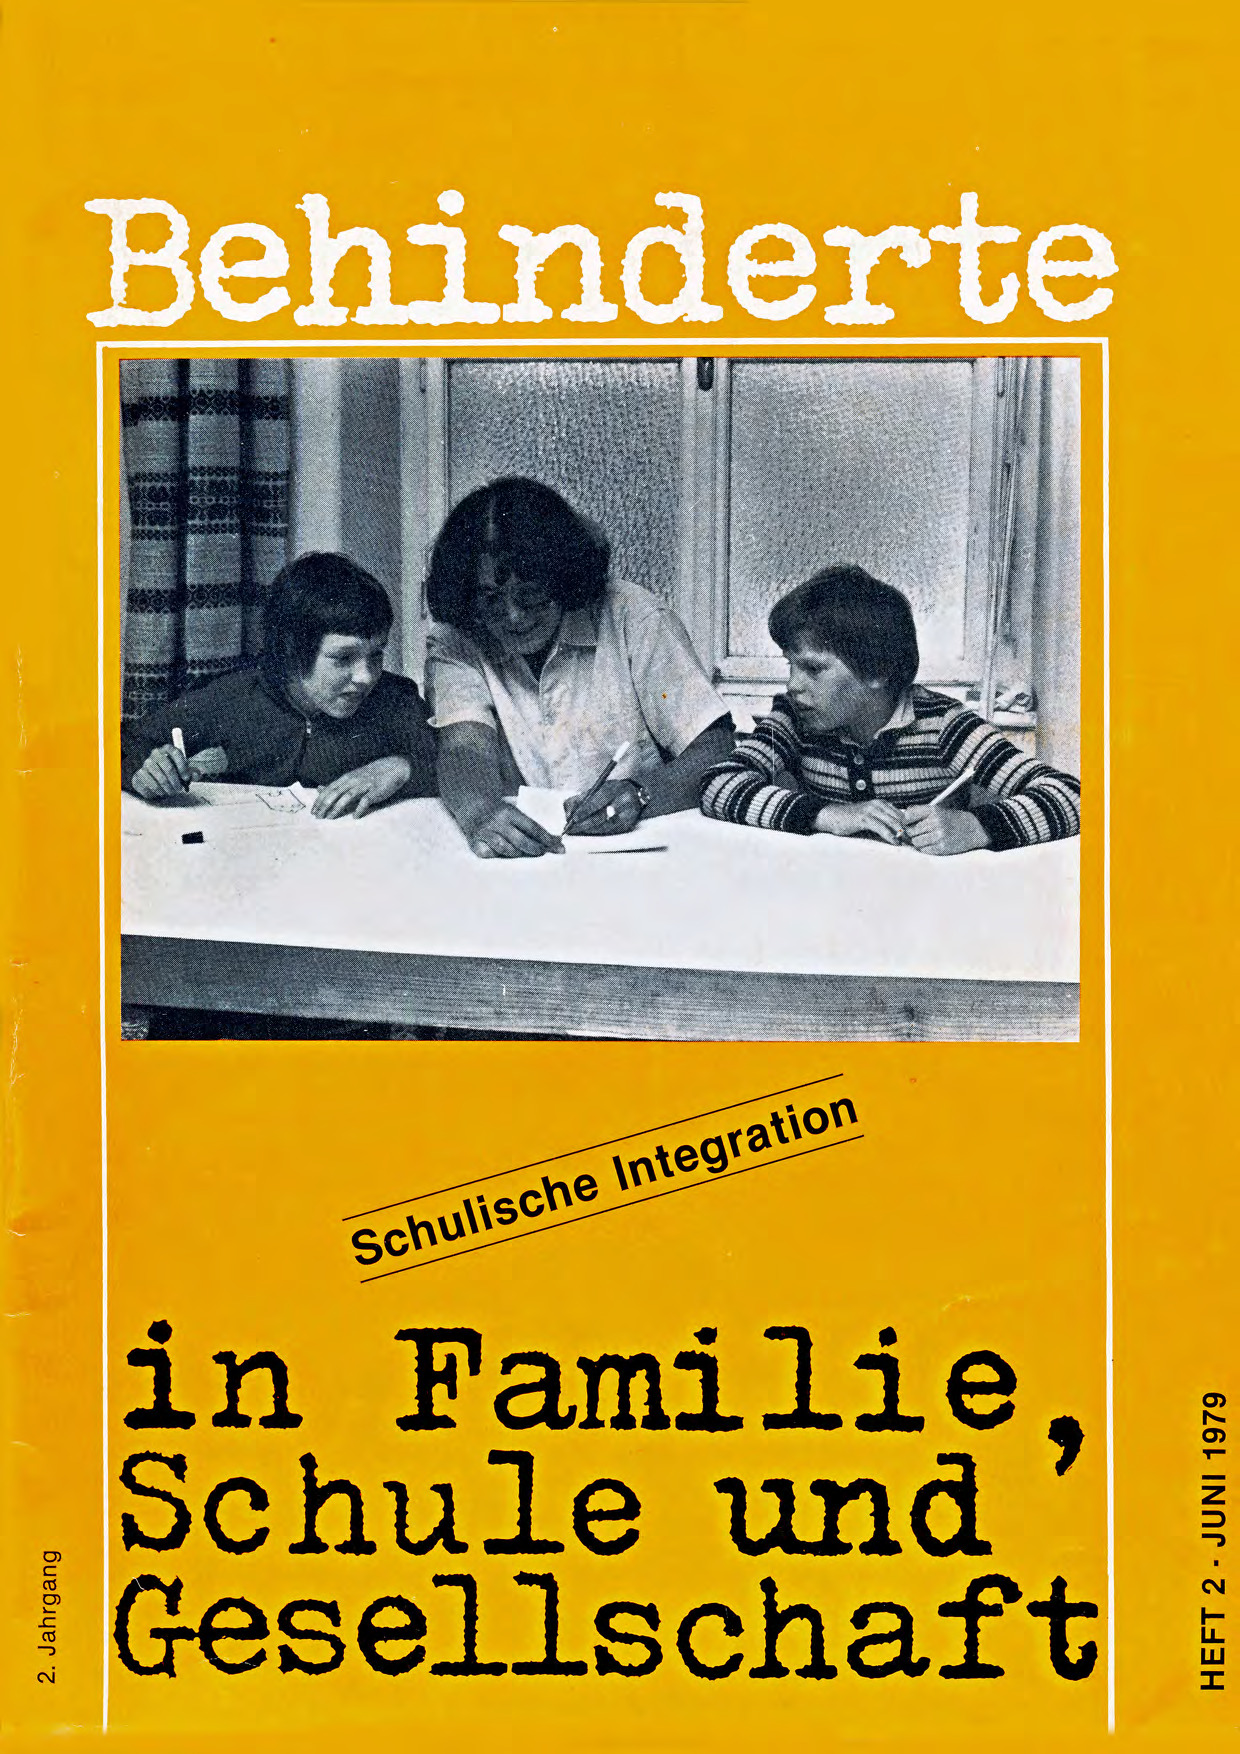 Titelbild der Zeitschrift BEHINDERTE MENSCHEN, Ausgabe 2/1979 "Schulische Integration"